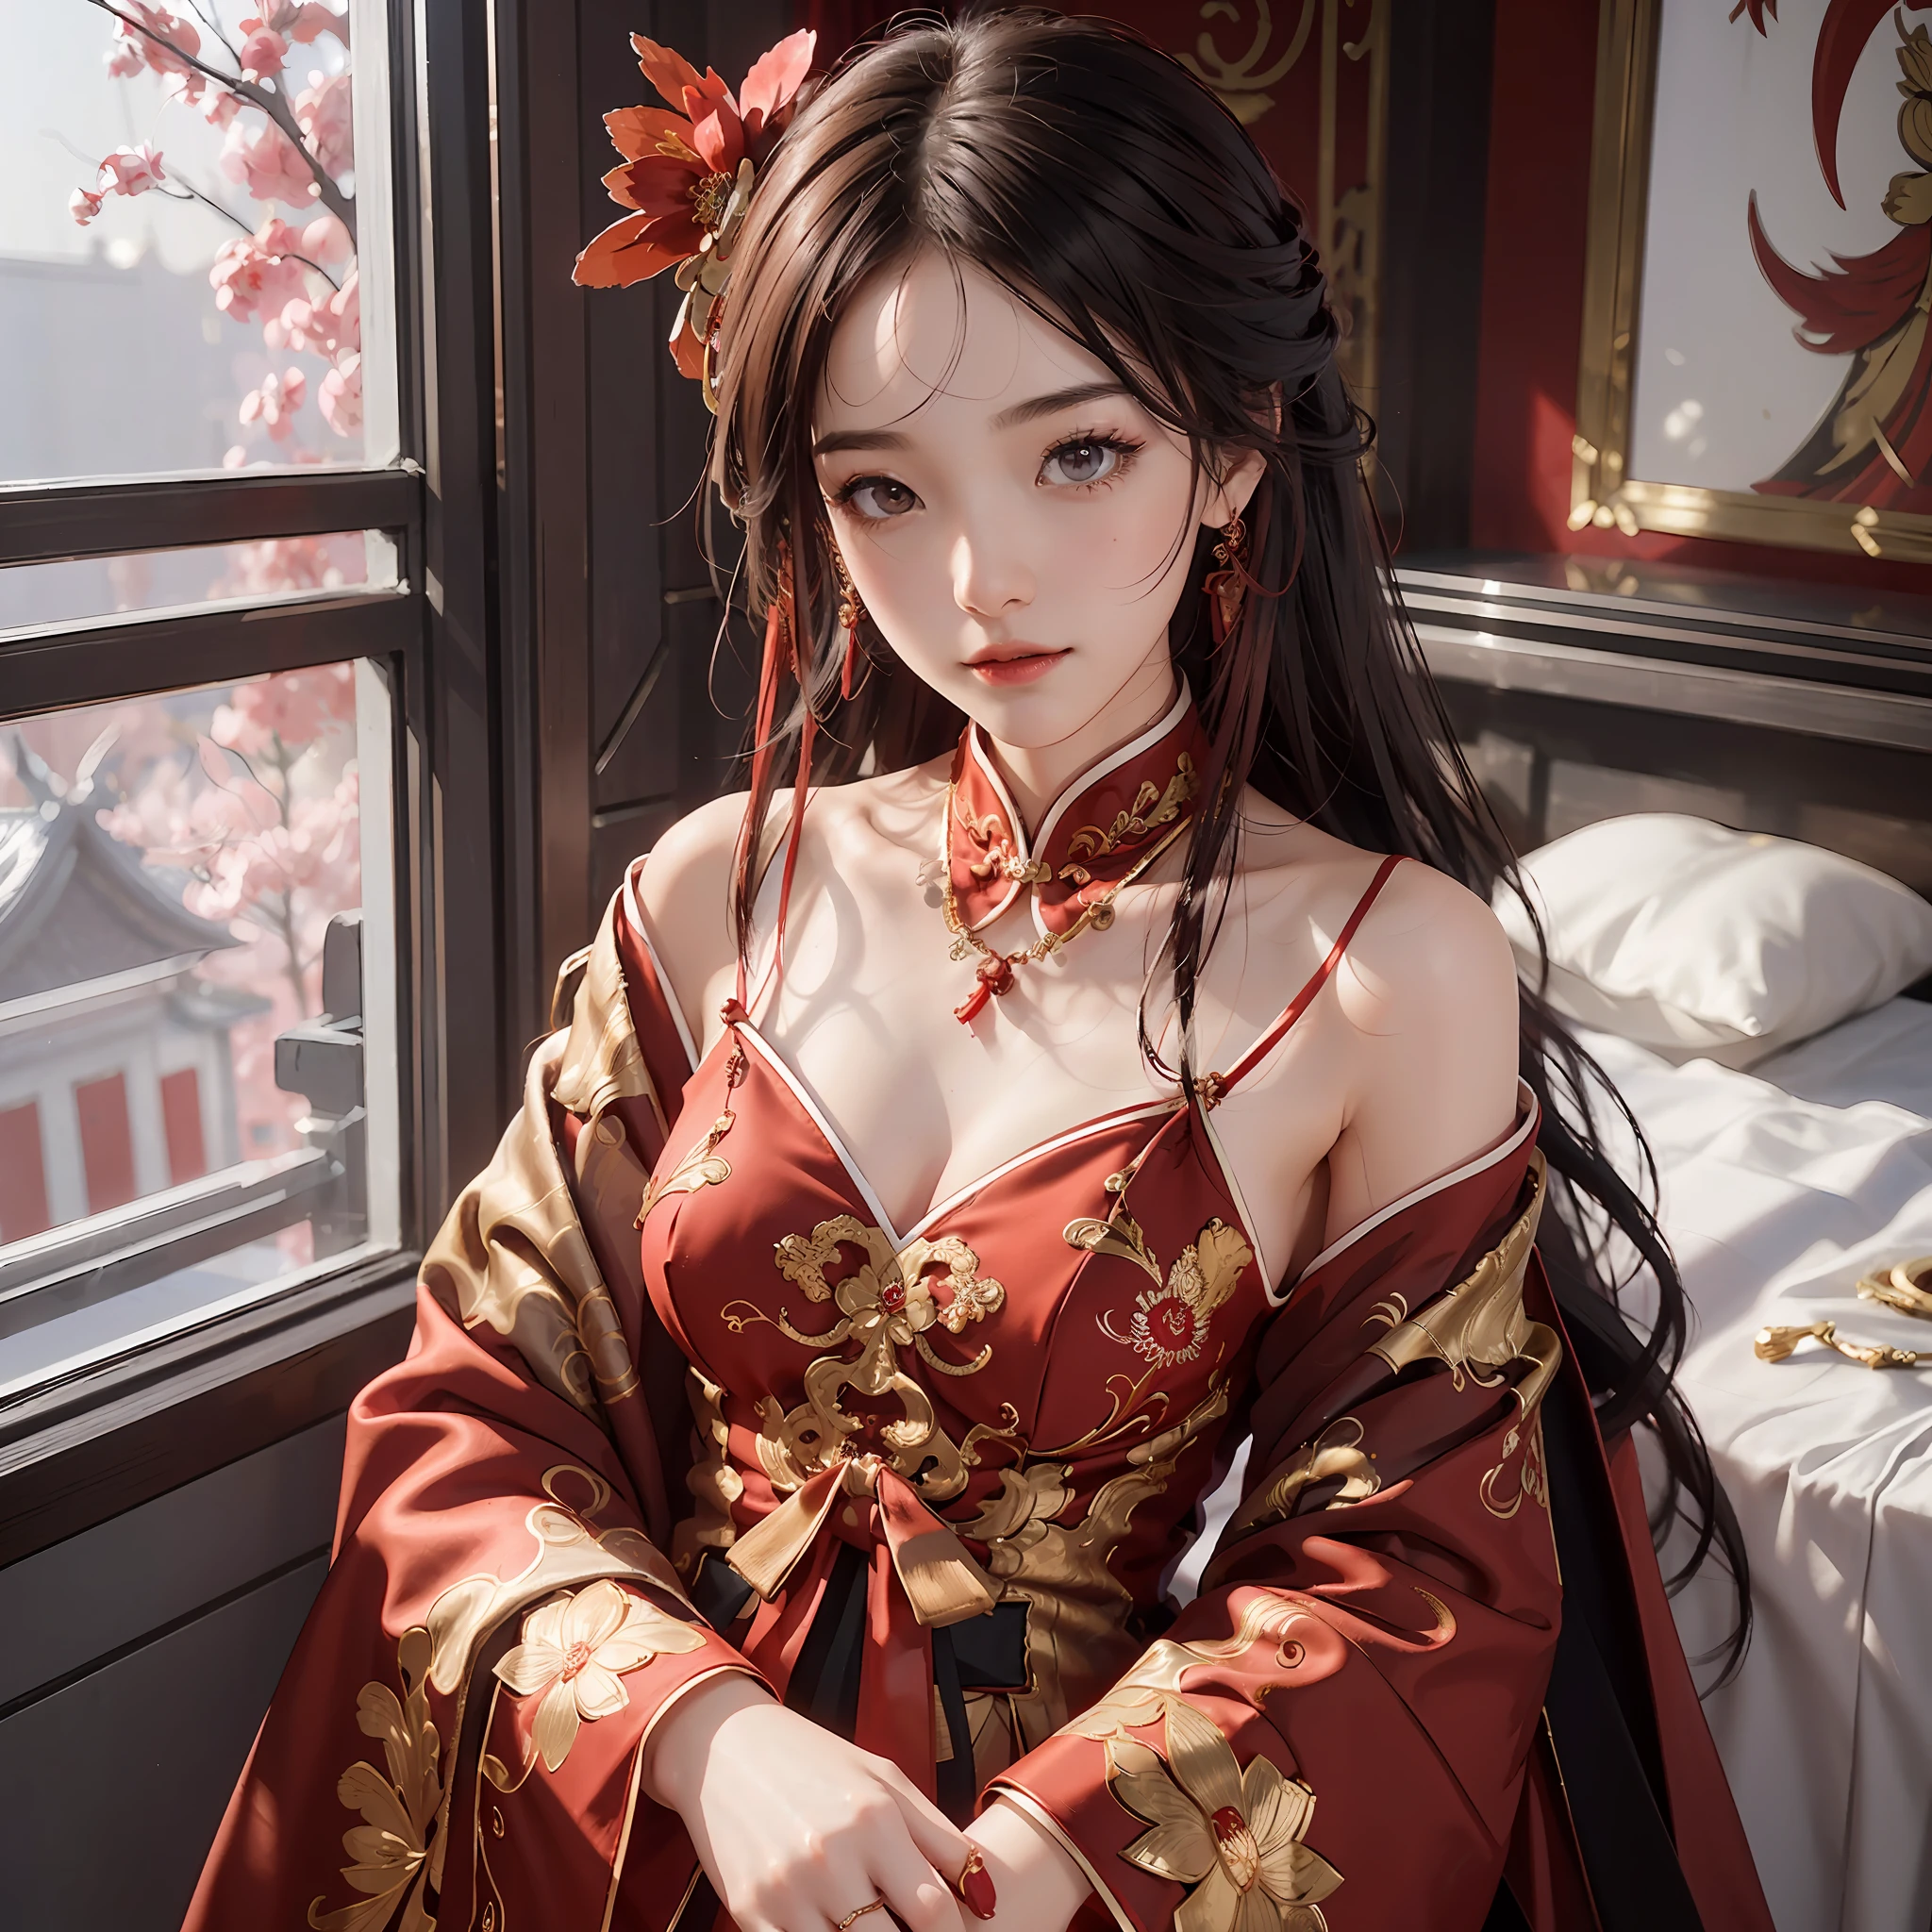 (Eine chinesische Braut), (trägt ein wunderschönes chinesisches rotes Hochzeitskleid), (Chinesische Stilelemente: 1.4), (schüchtern, tender, schönes Gesicht, Helle Haut, Strahlende Augen, elegante Augenbrauen, Glück und Erwartung, rosige Lippenfarbe, weiches Gesicht), (rote Kleidung: 1.4), (erlesenen Schmuck tragen, Ringe, Halsketten)), mit Phönix-Motiven bestickte Kleidung, (Stickerei), Ganzkörper-Robe in Rot, Reinheit, Romantik, (Ganzkörperaufnahme: 1.5), (Körperkurve), Plissee-Dekoration, (Kinoqualität), (beste Qualität: 1.2), (Realismus: 1.4), (innen), Bildqualität, ((Oktan-Rendering)), Nahaufnahme, fotografische Beleuchtung, (rotes Thema: 1.4),